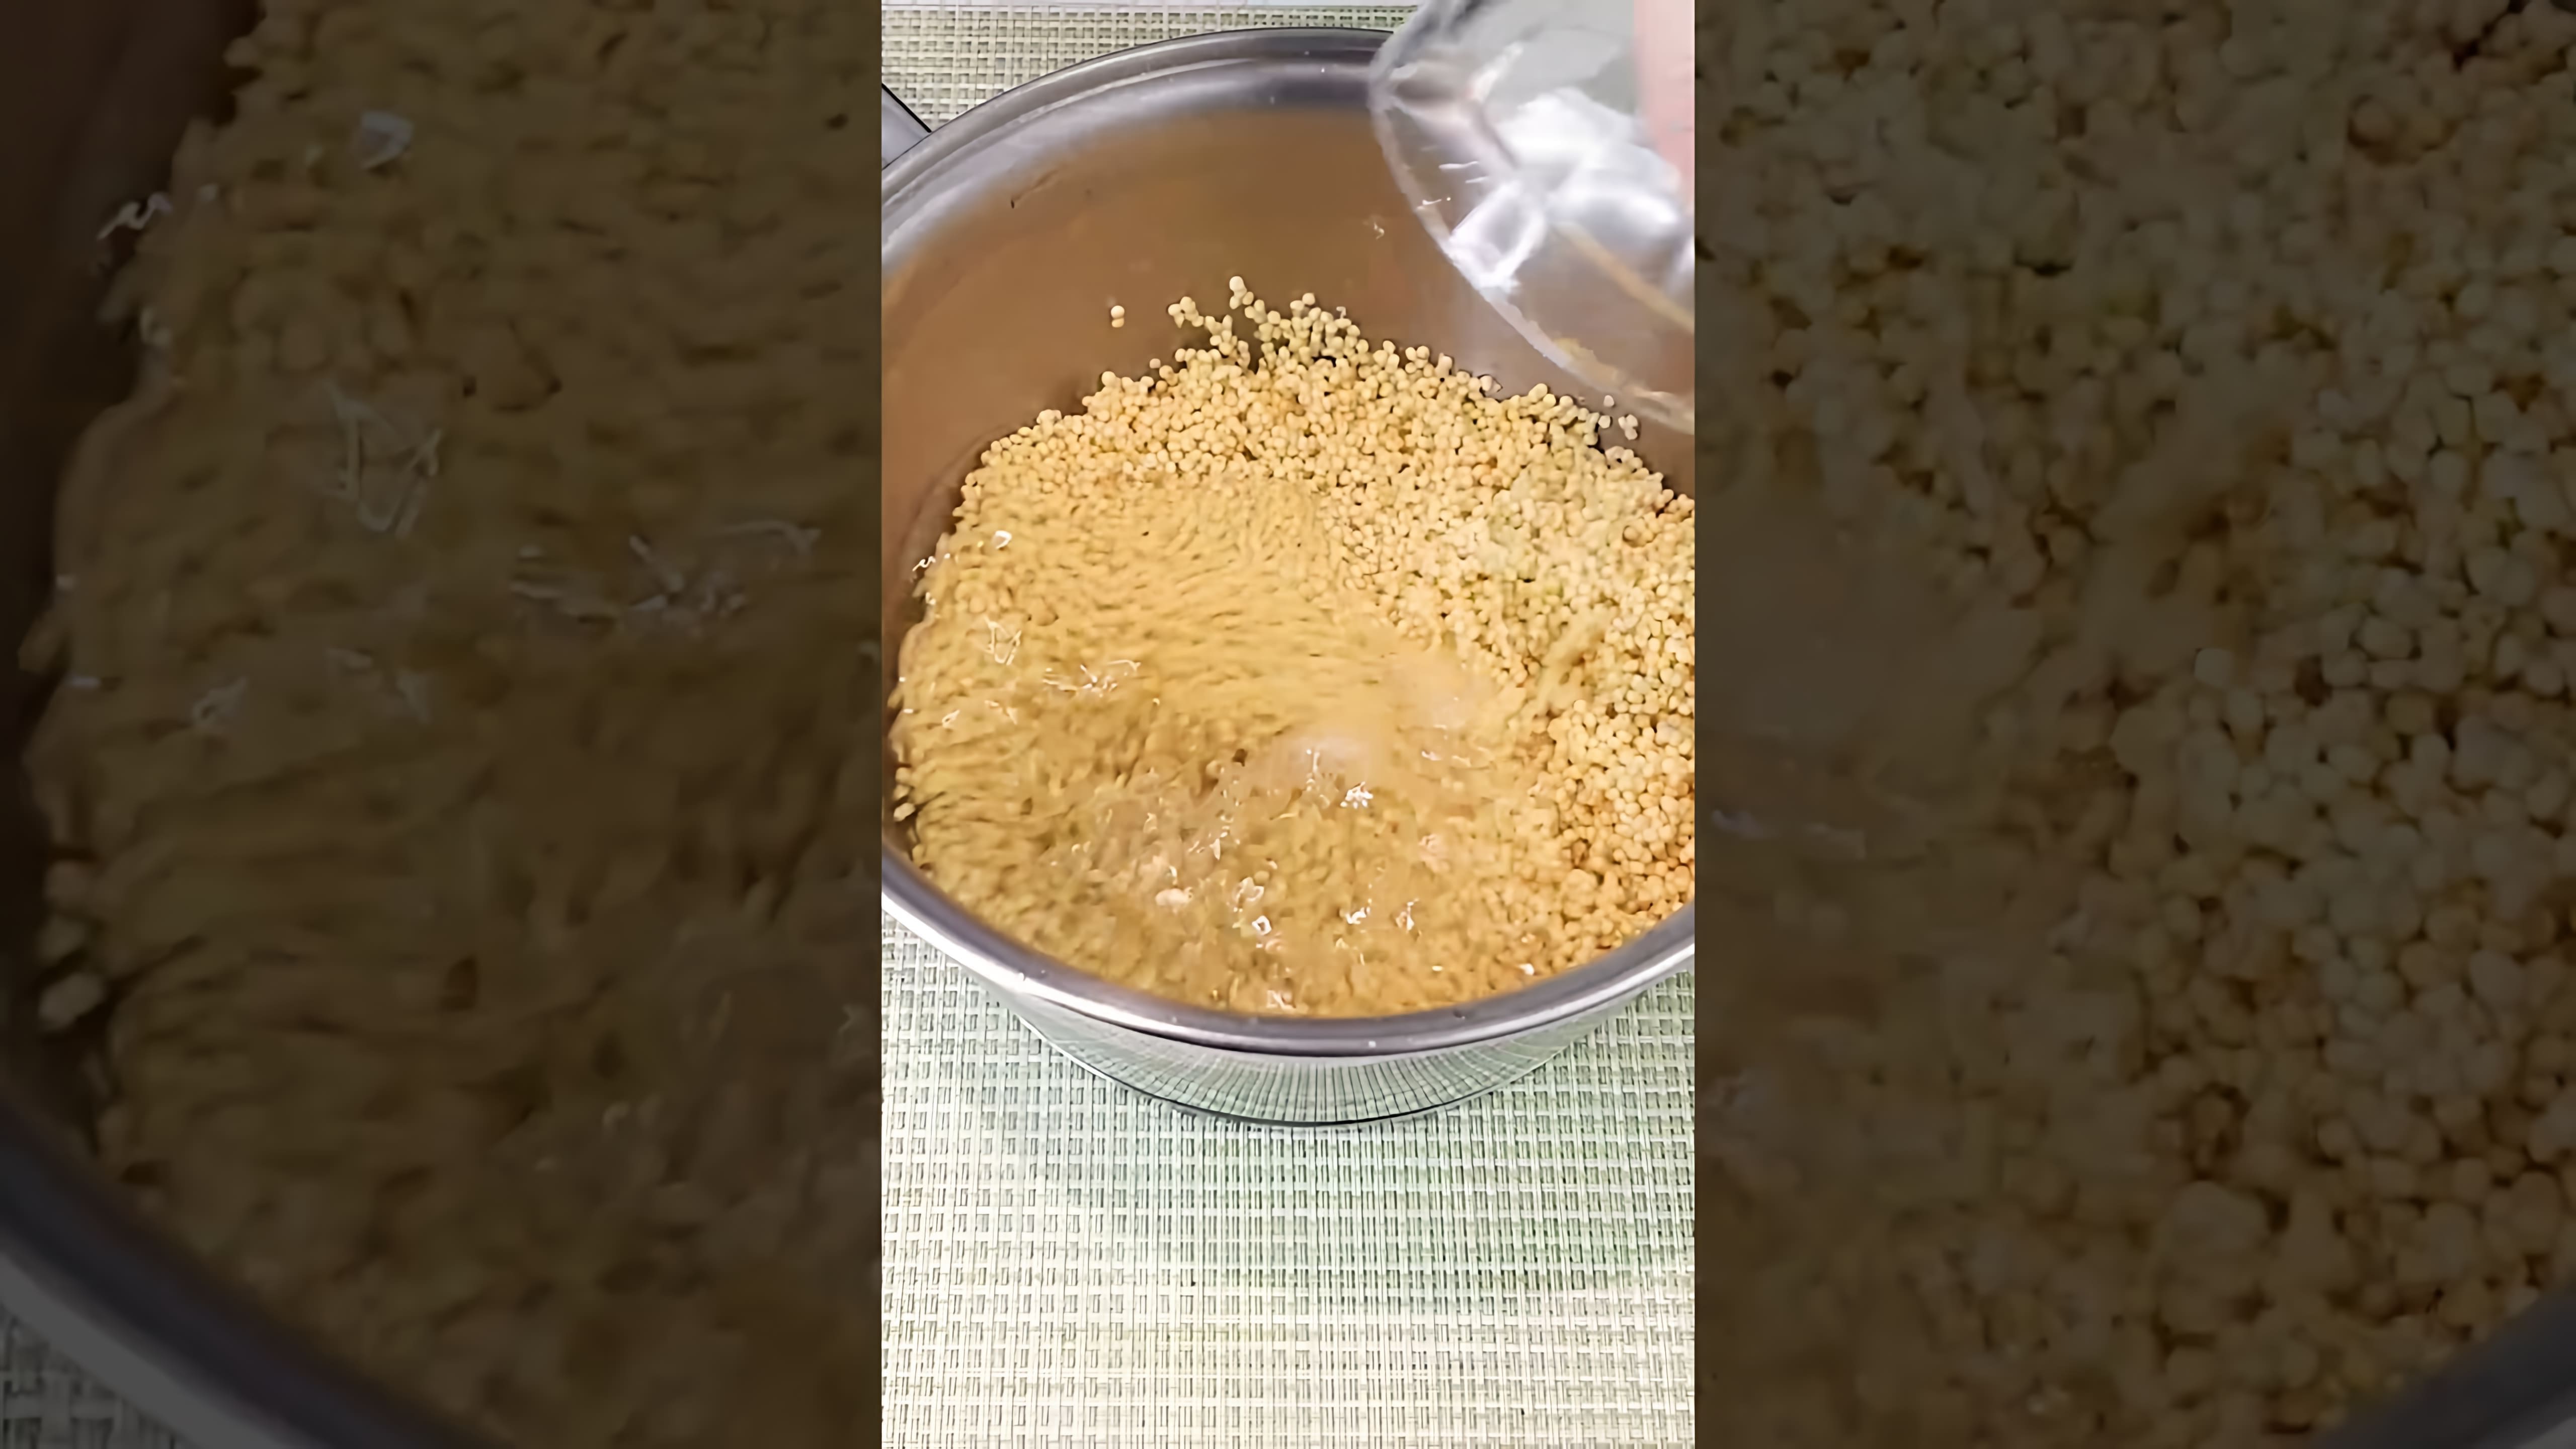 В этом видео демонстрируется процесс приготовления пшенной каши на воде или бульоне